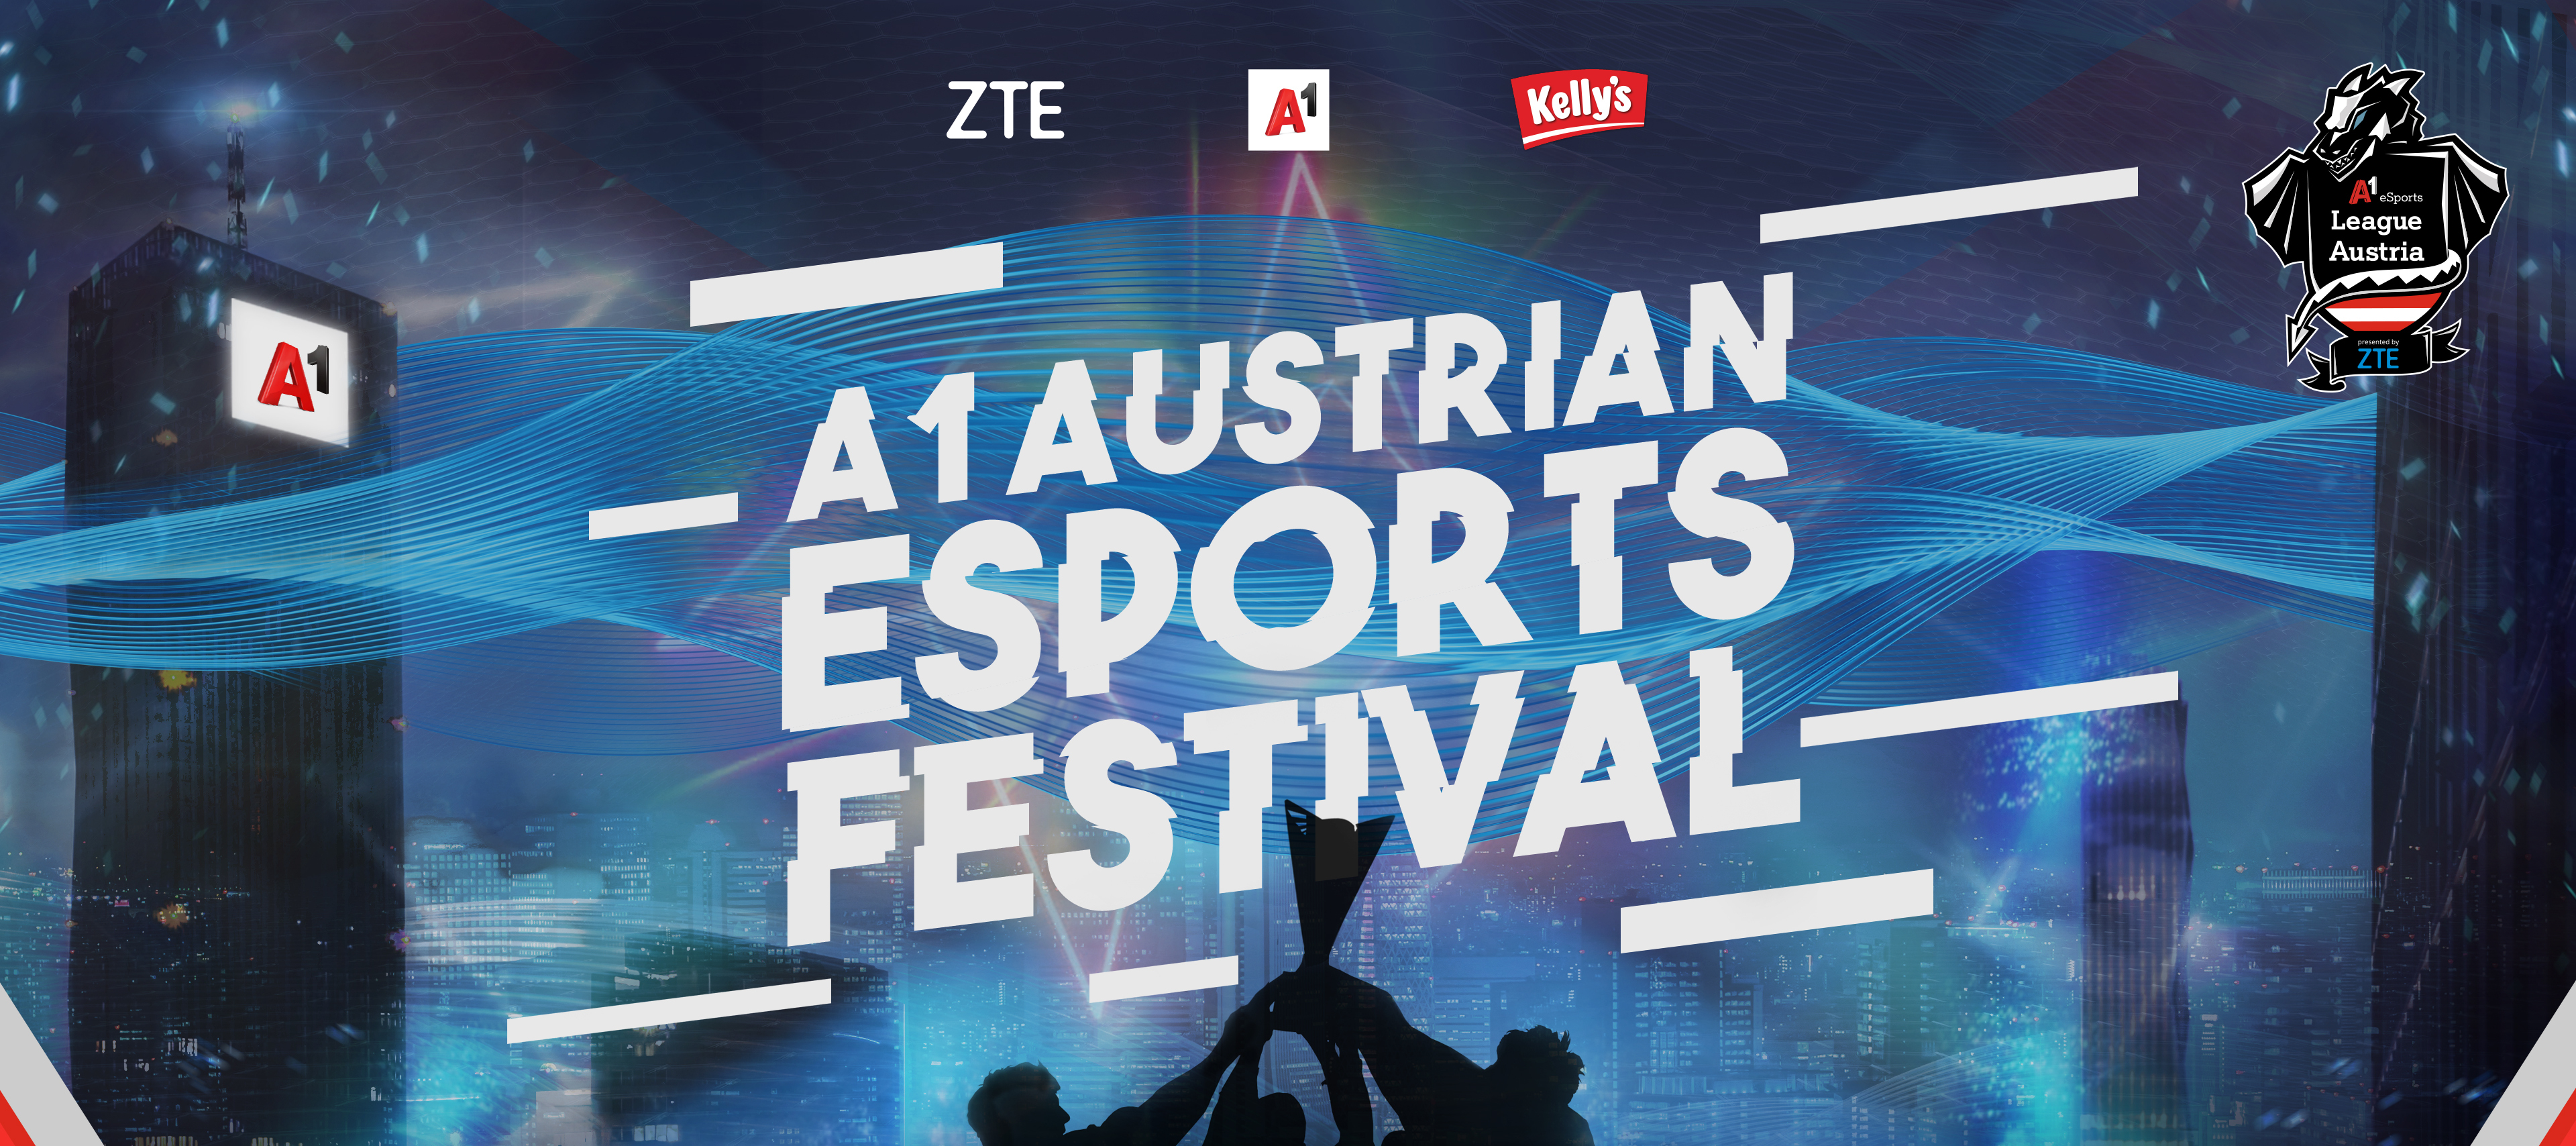 Jetzt gewinnen: 3x2 Tickets für das A1 Austrian eSports Festival